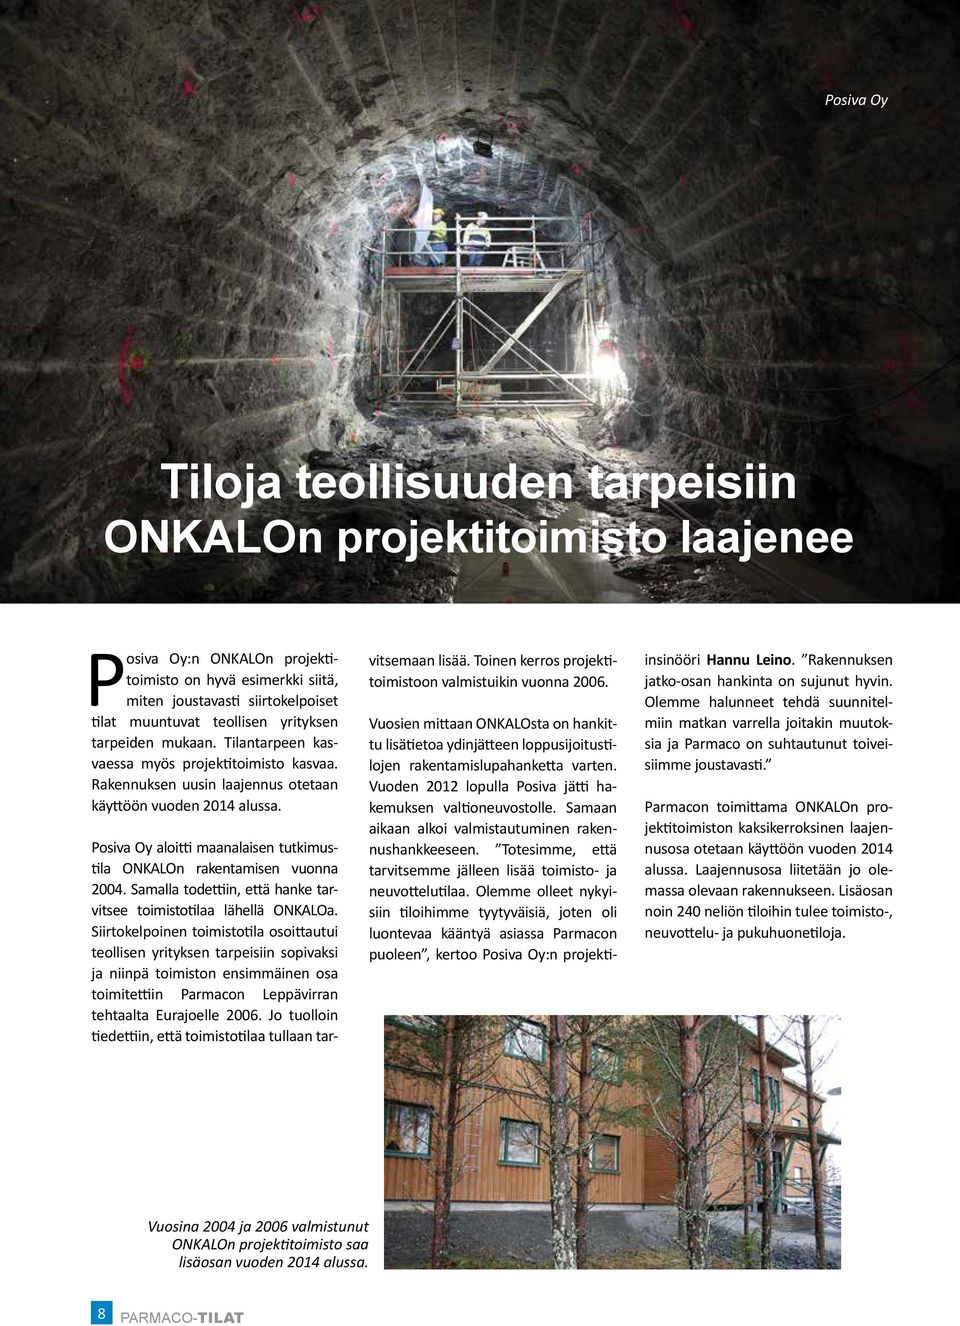 Posiva Oy aloitti maanalaisen tutkimustila ONKALOn rakentamisen vuonna 2004. Samalla todettiin, että hanke tarvitsee toimistotilaa lähellä ONKALOa.